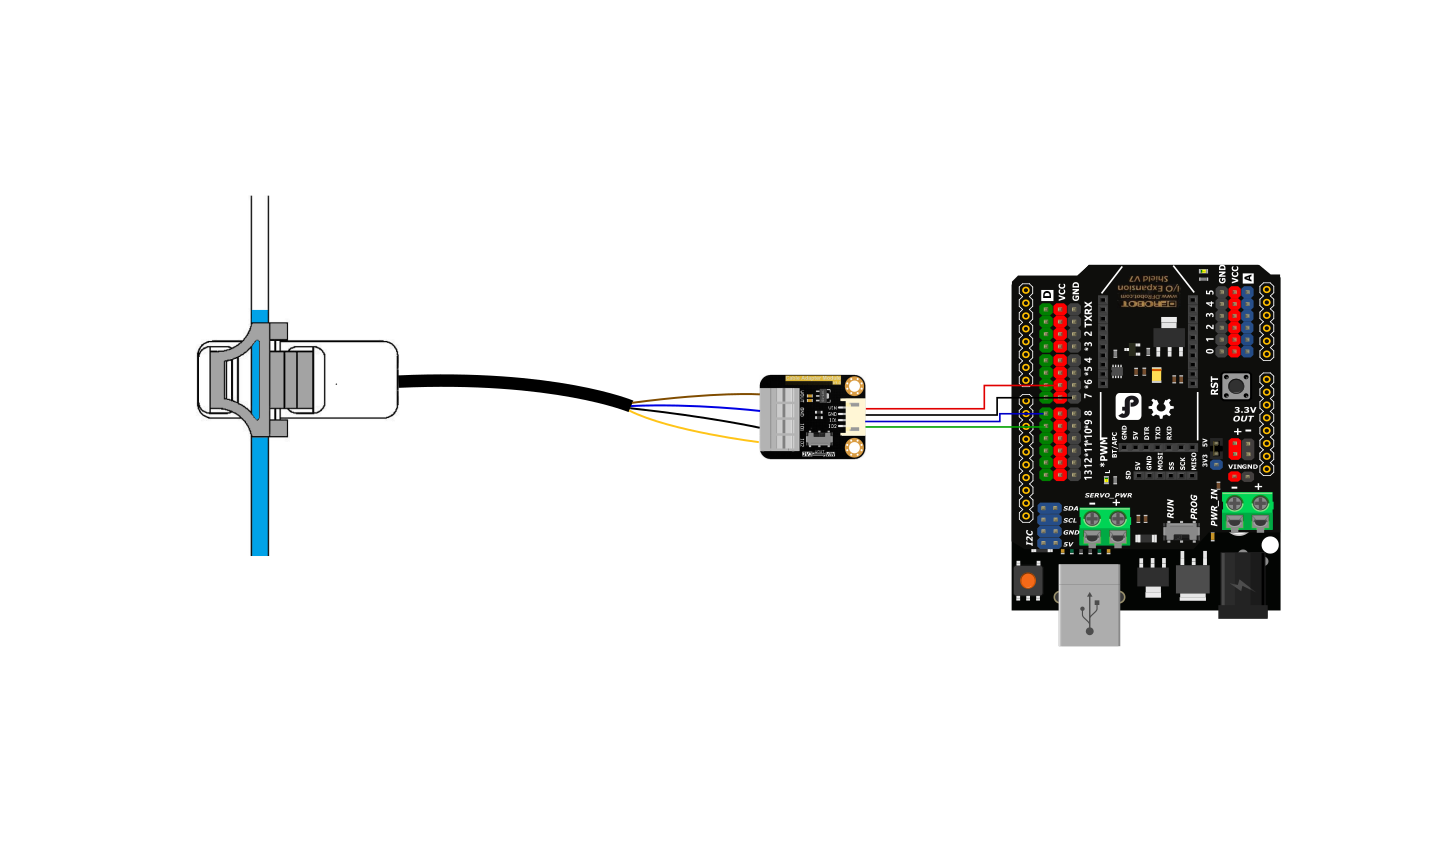 Anschlussplan des Sensors mit Arduino.